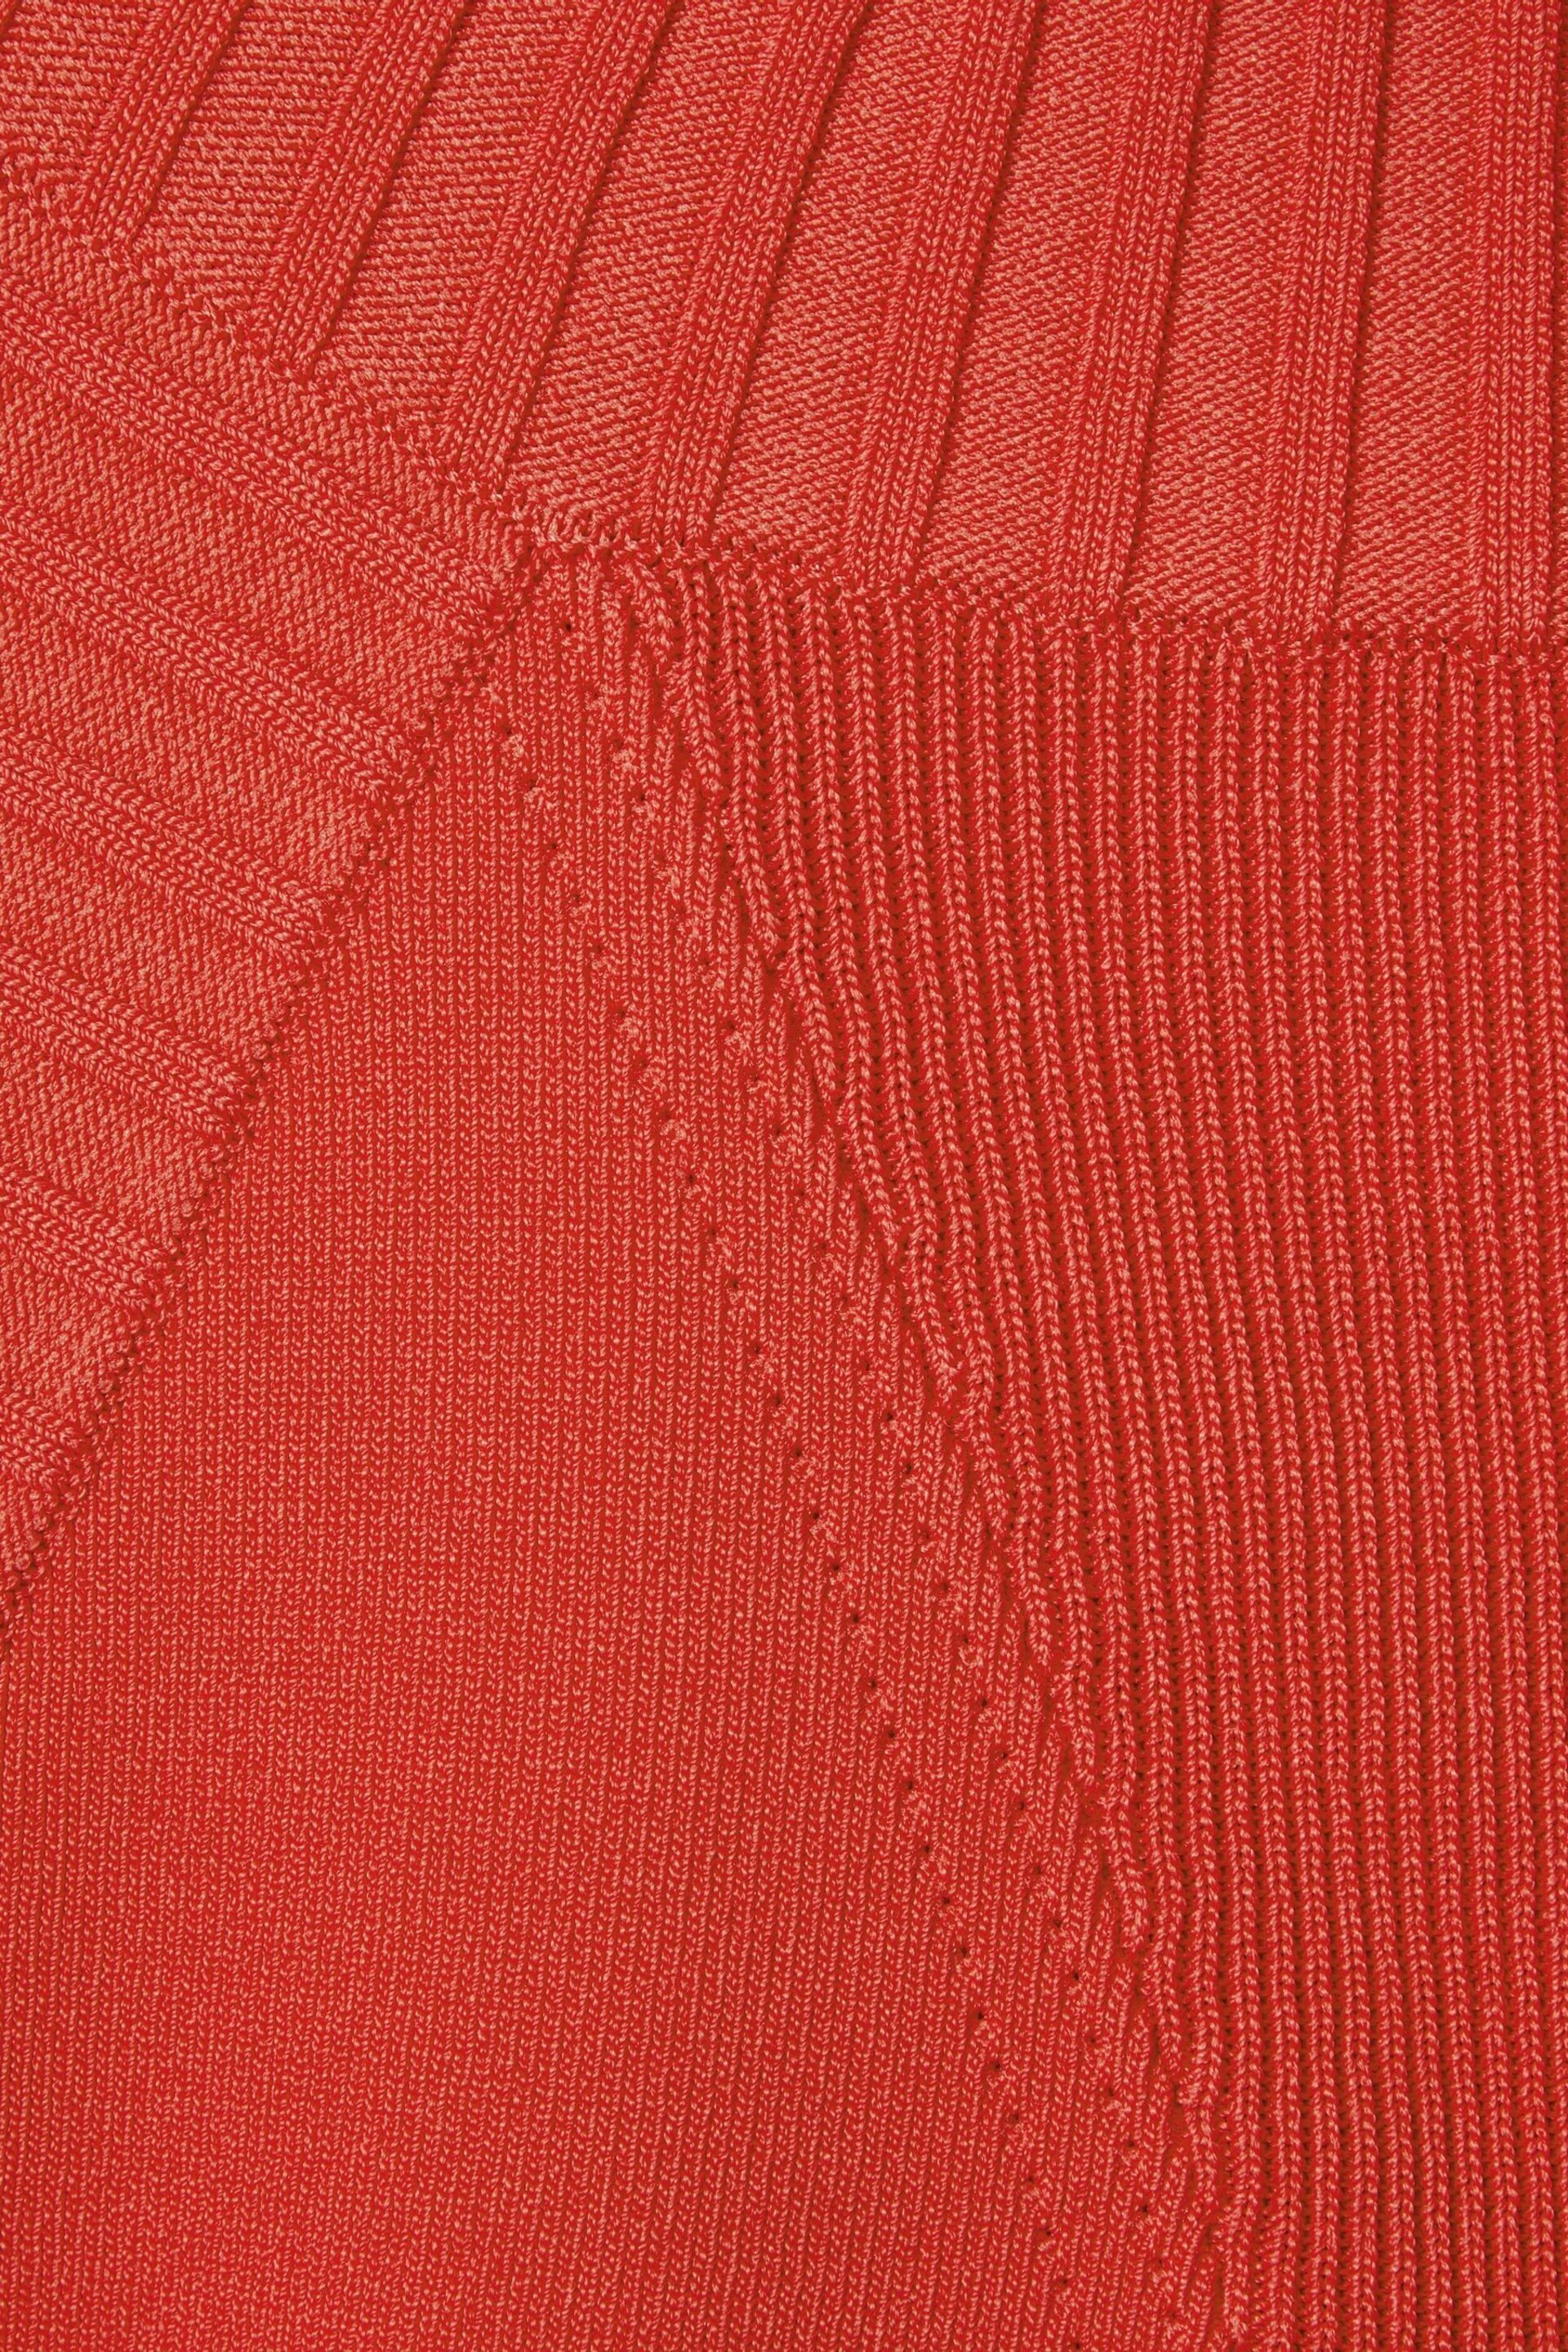 Florere Knitted Halter Neck Vest - Image 6 of 6